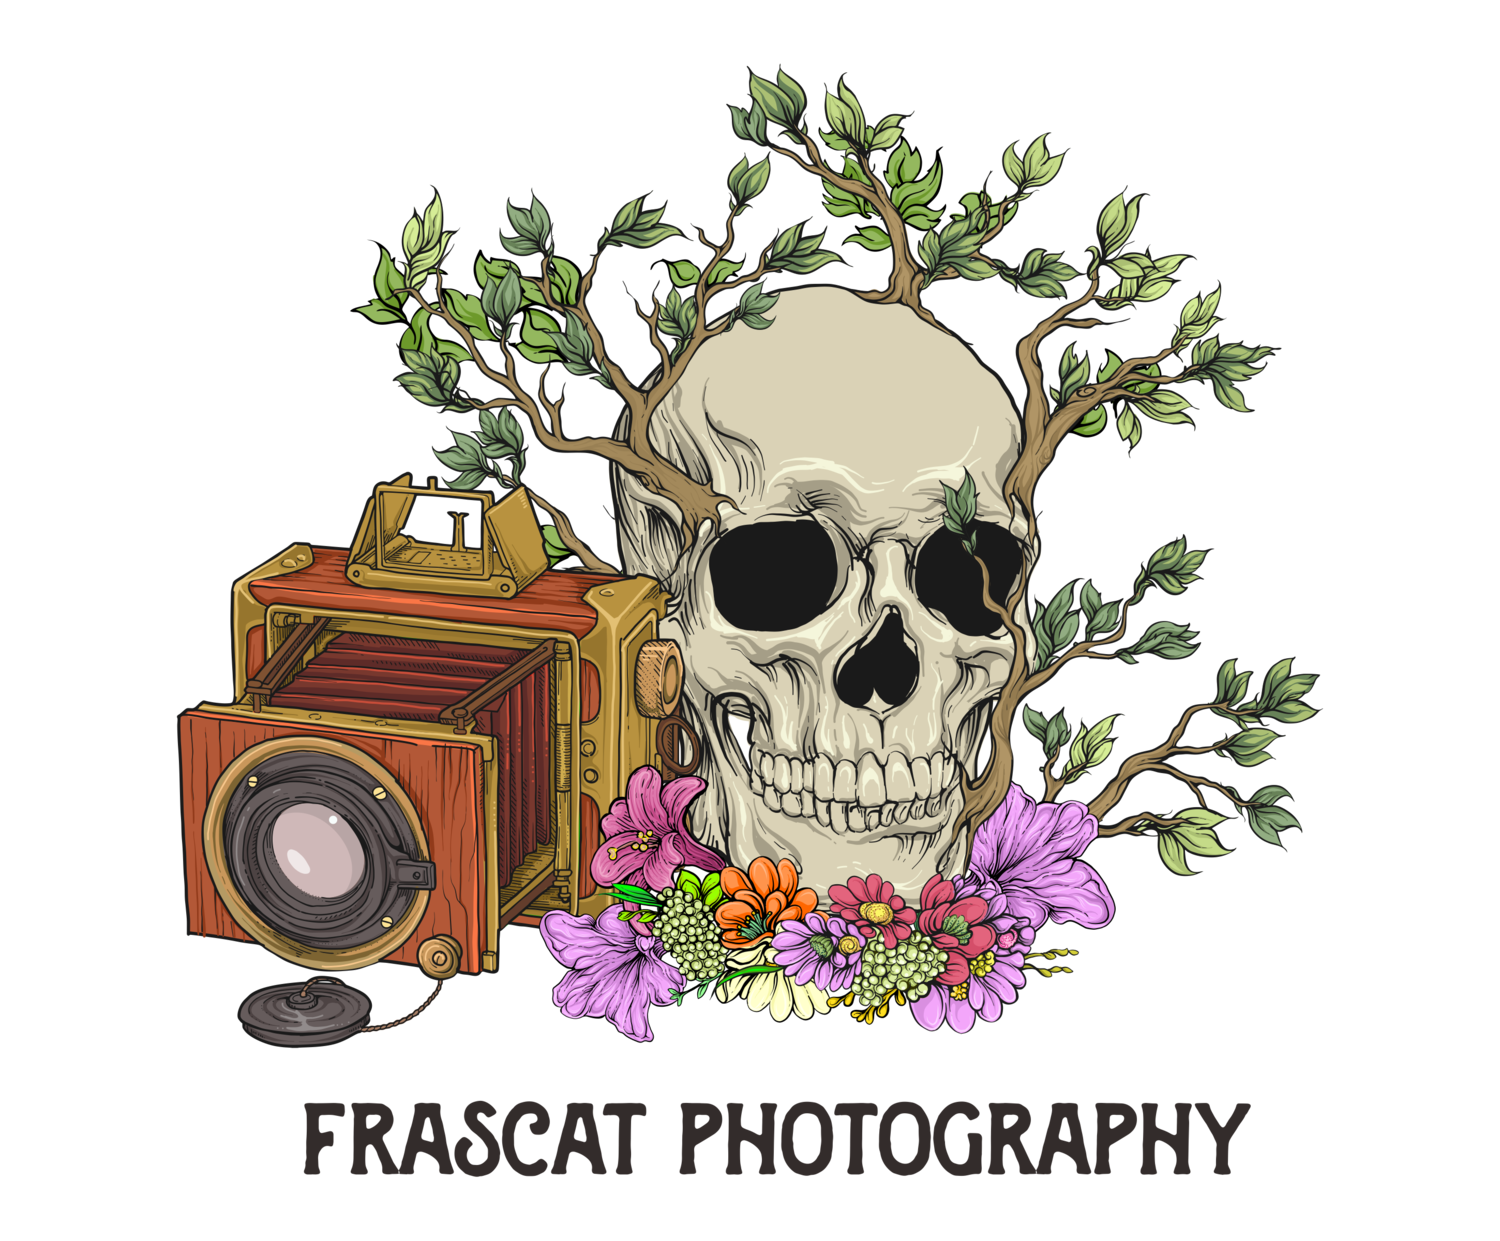 Frascat Photography